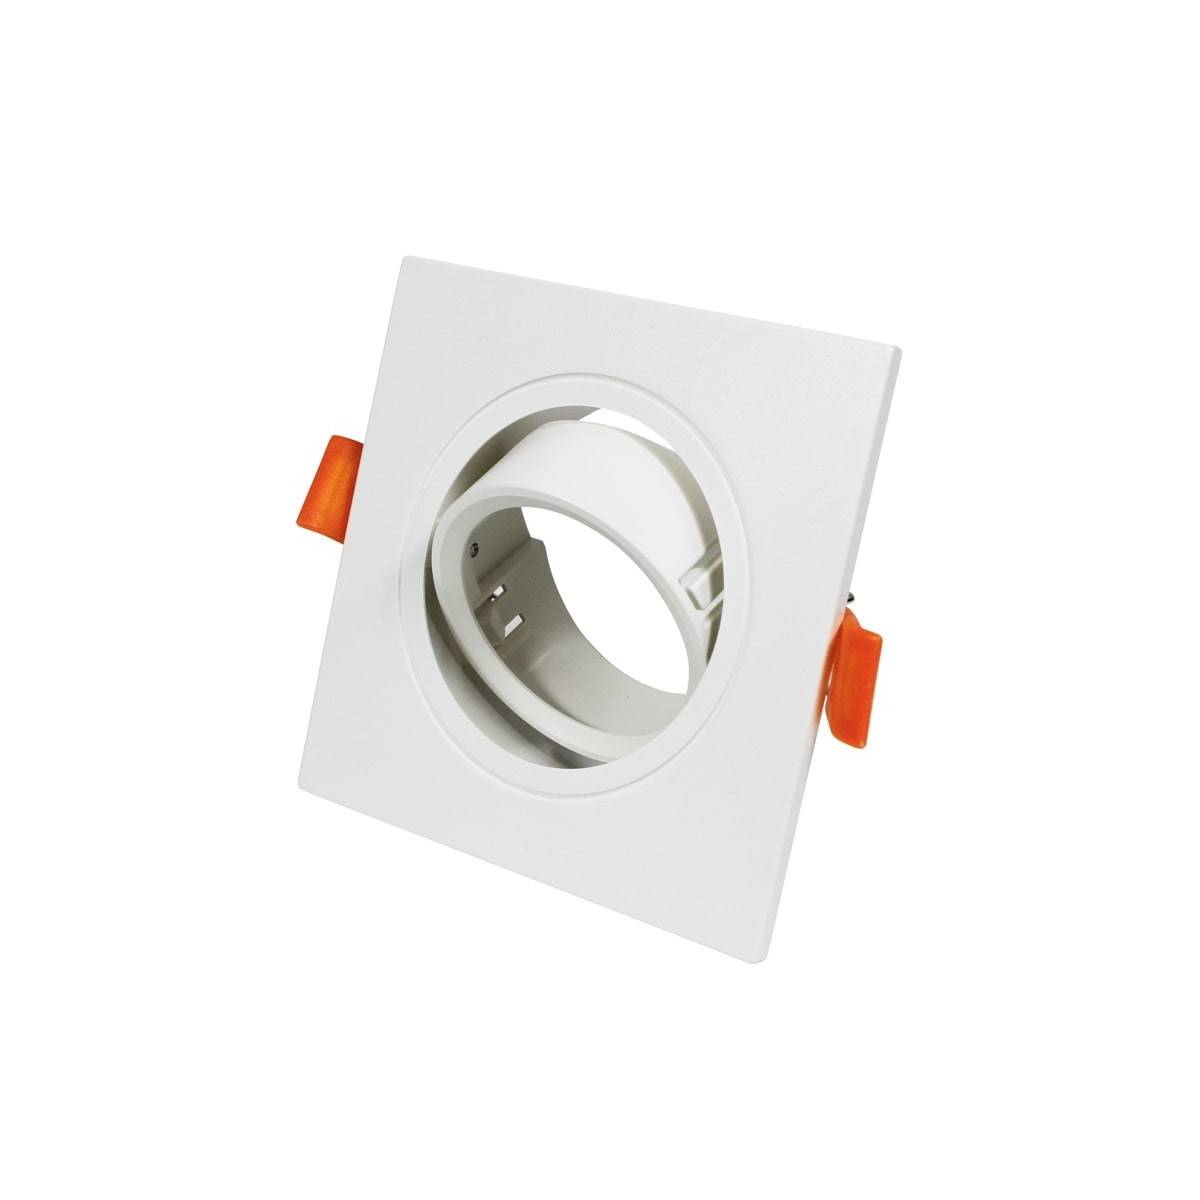 Anello quadrato basculante per lampadina GU10/MR16 - Taglio Ø75mm